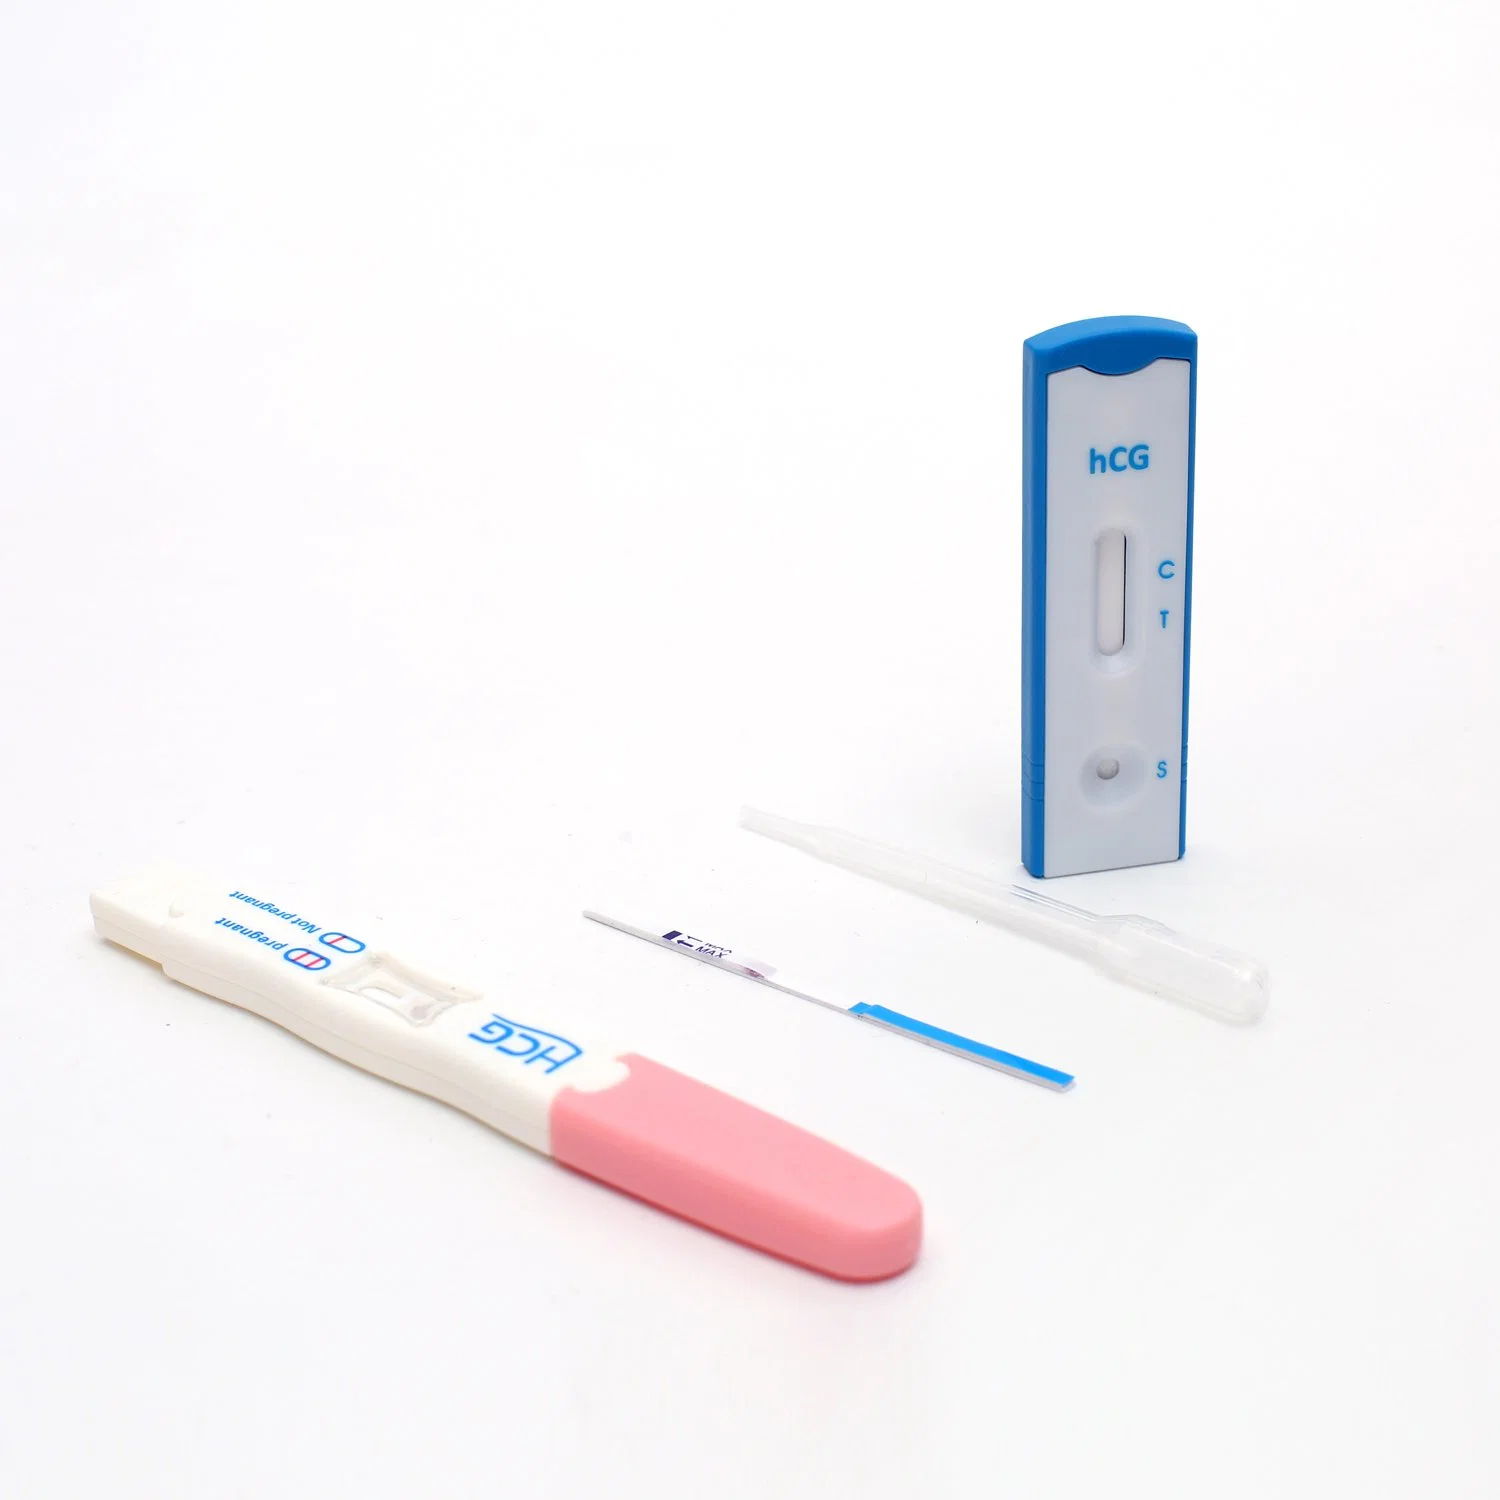 Tira de teste de gravidez HCG Kits com marcação FDA aprovou ISO